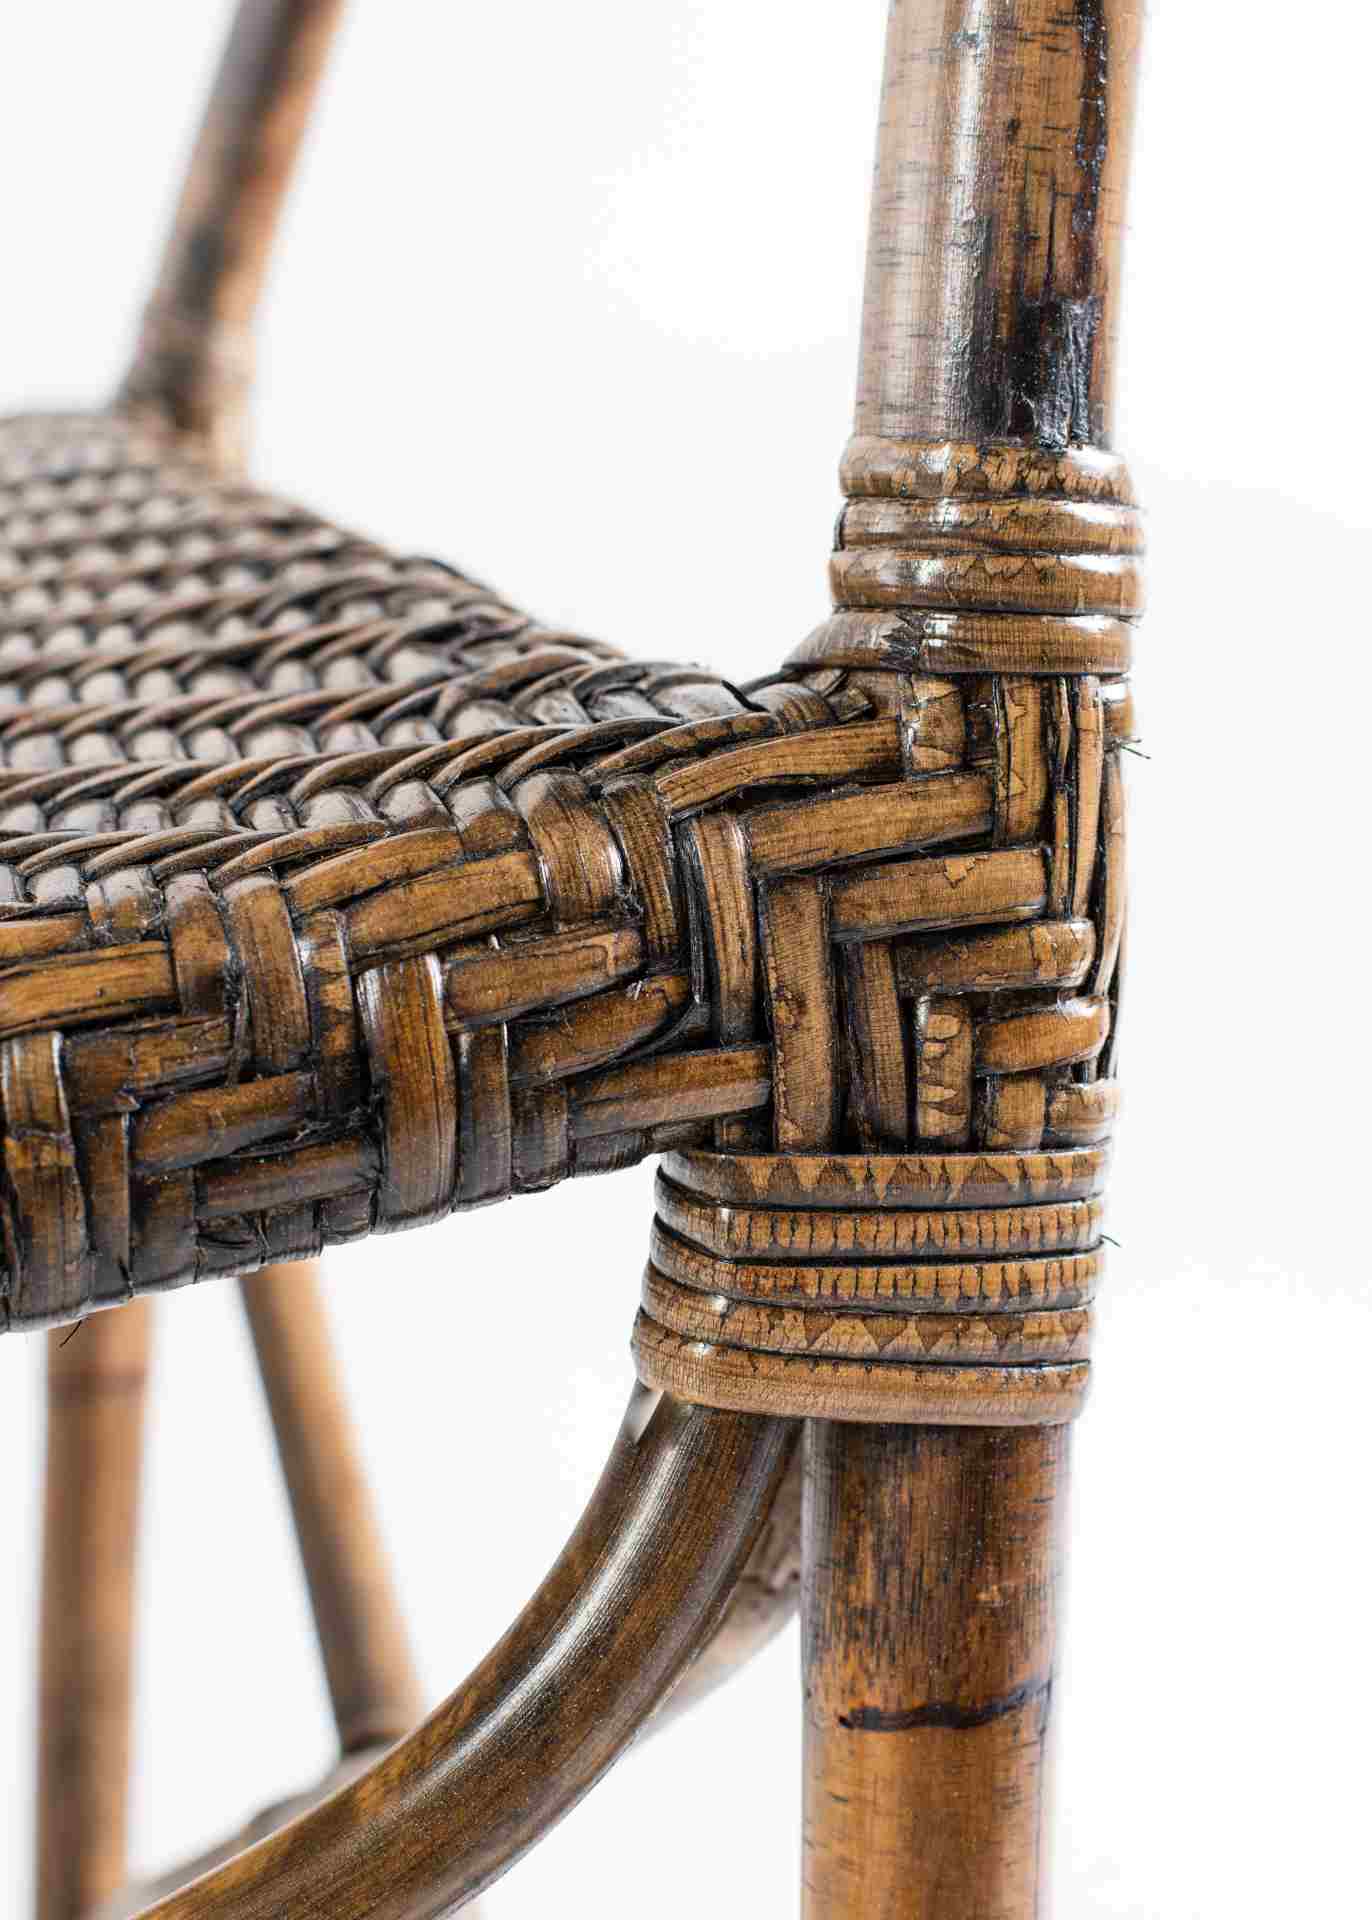 Der Armlehnstuhl Squire überzeugt mit seinem Landhaus Stil. Gefertigt wurde er aus Rattan, welches einen braunen Farbton besitzt. Der Stuhl verfügt über eine Armlehne und ist im 2er-Set erhältlich. Die Sitzhöhe beträgt beträgt 43 cm.